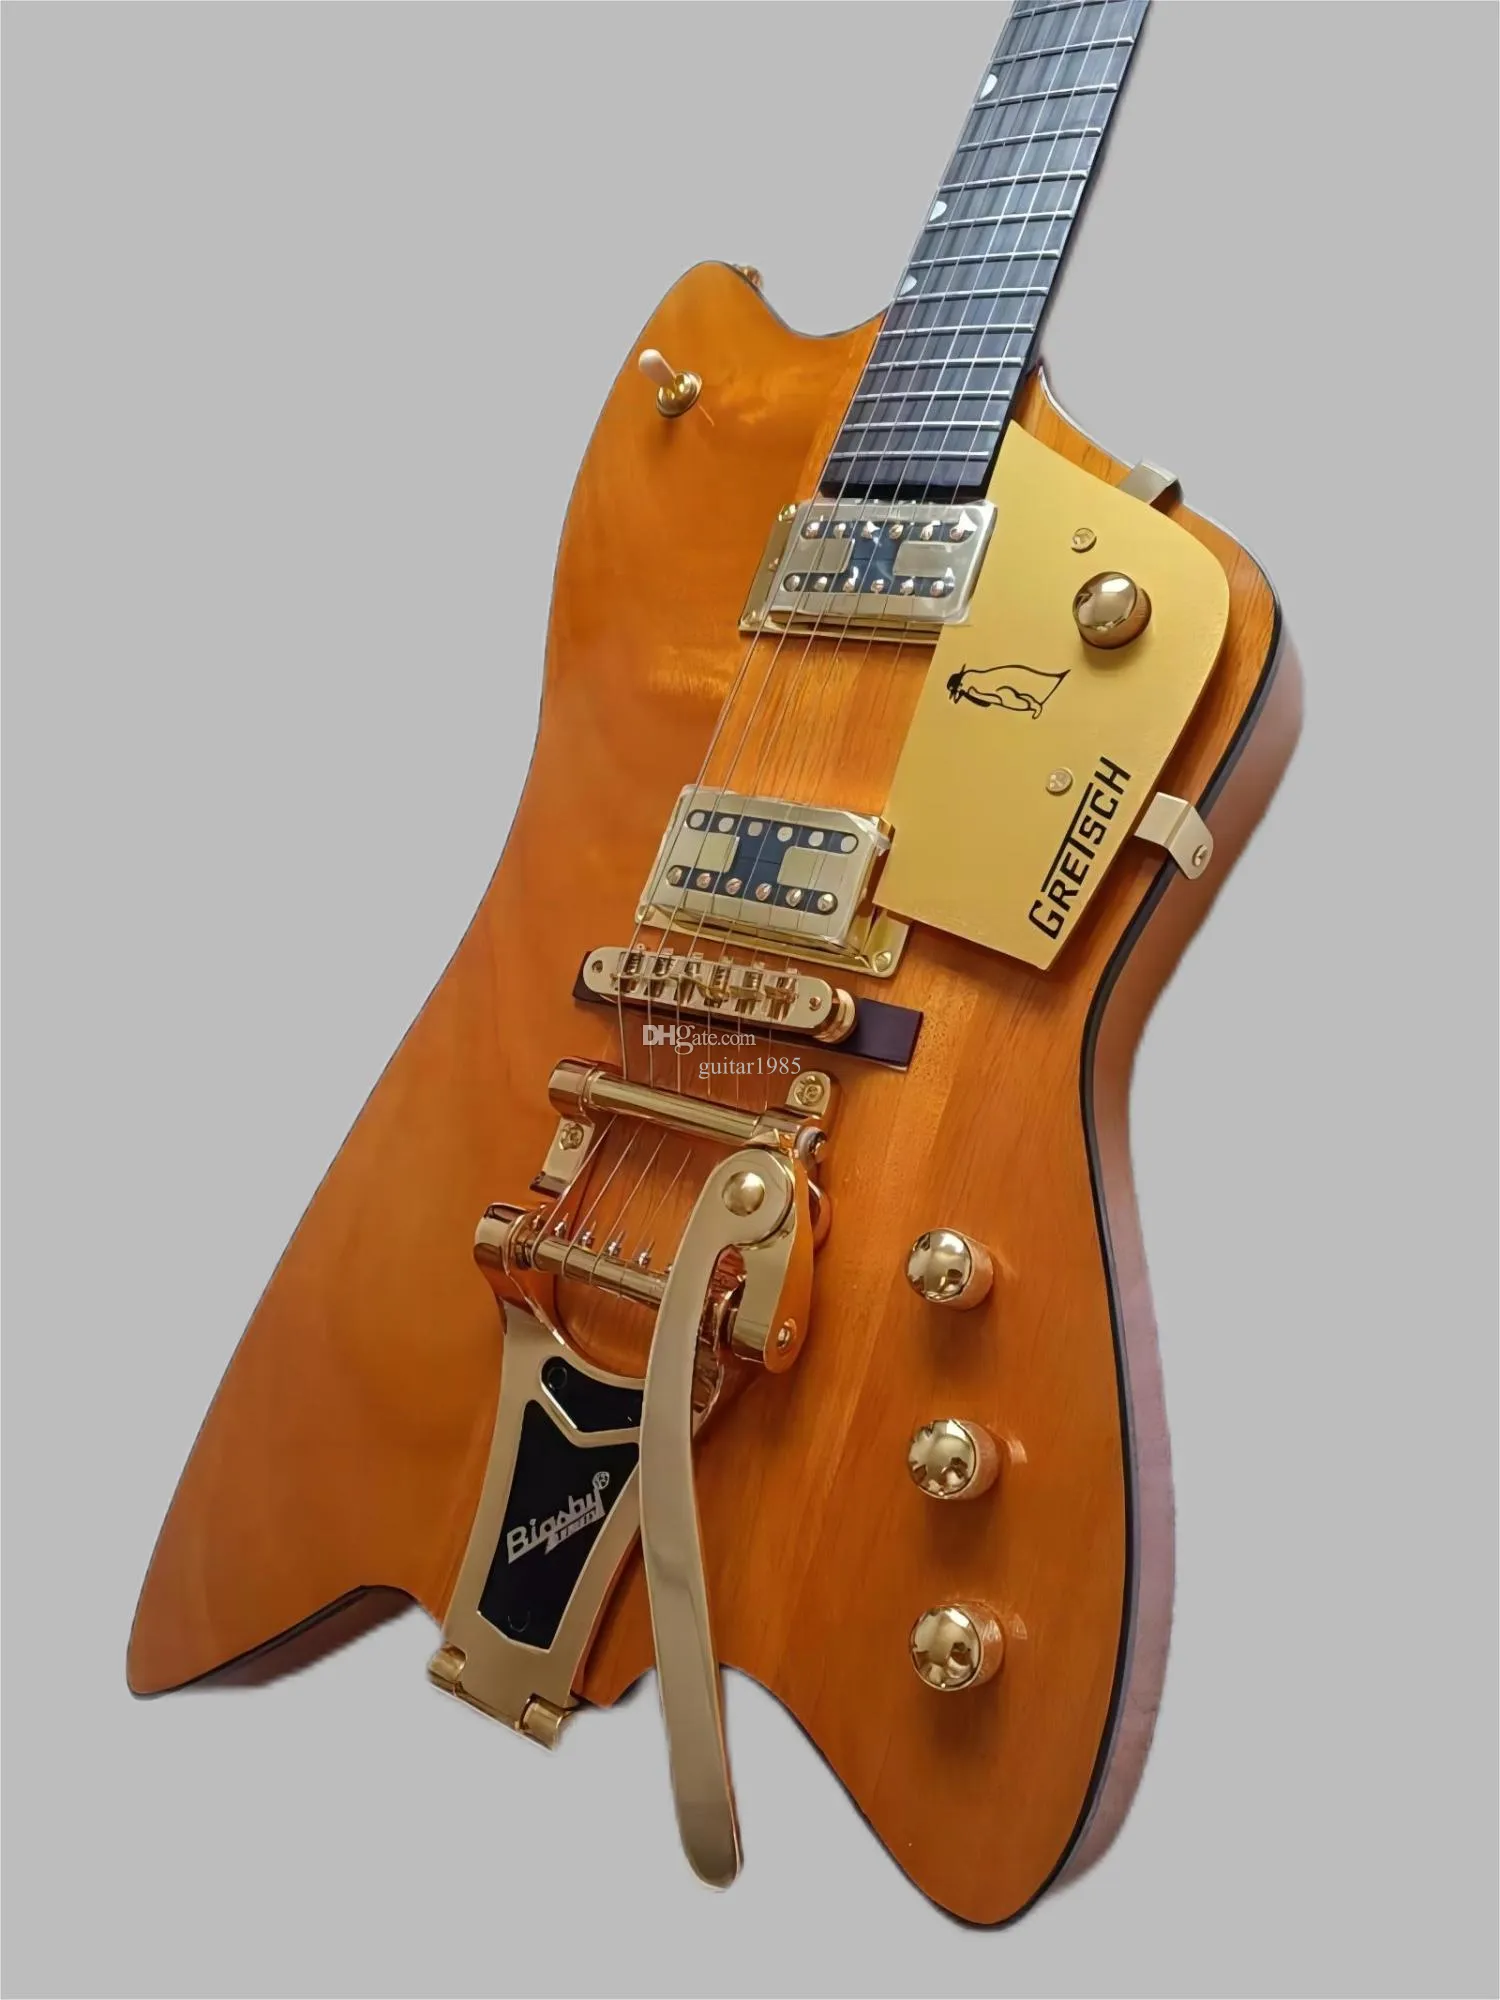 高品質6199TWビリーボージュピターファイアエレクトリックギターOEM、透明な黄色のペイント、マホガニーボディ、大きなビブラートシステム、例外的なギター